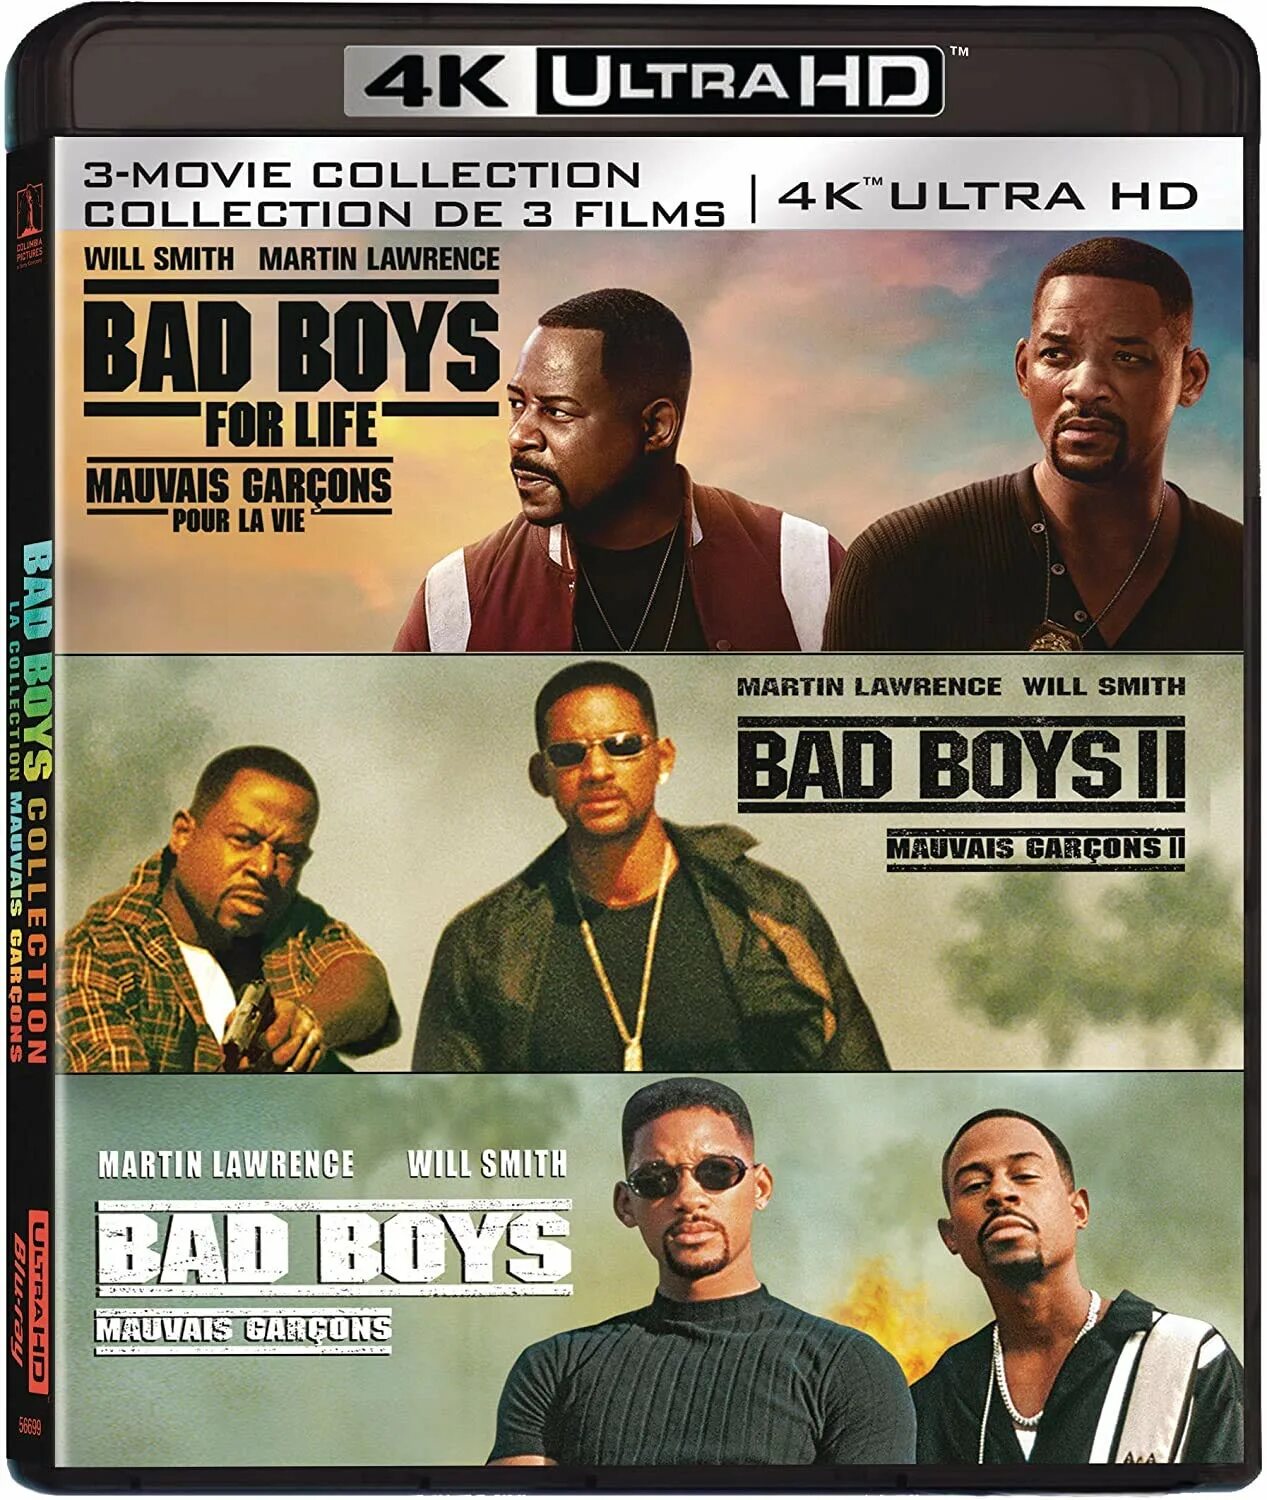 Bad boys for life. Bad boy. Bad boys 2. Bad boys 3.